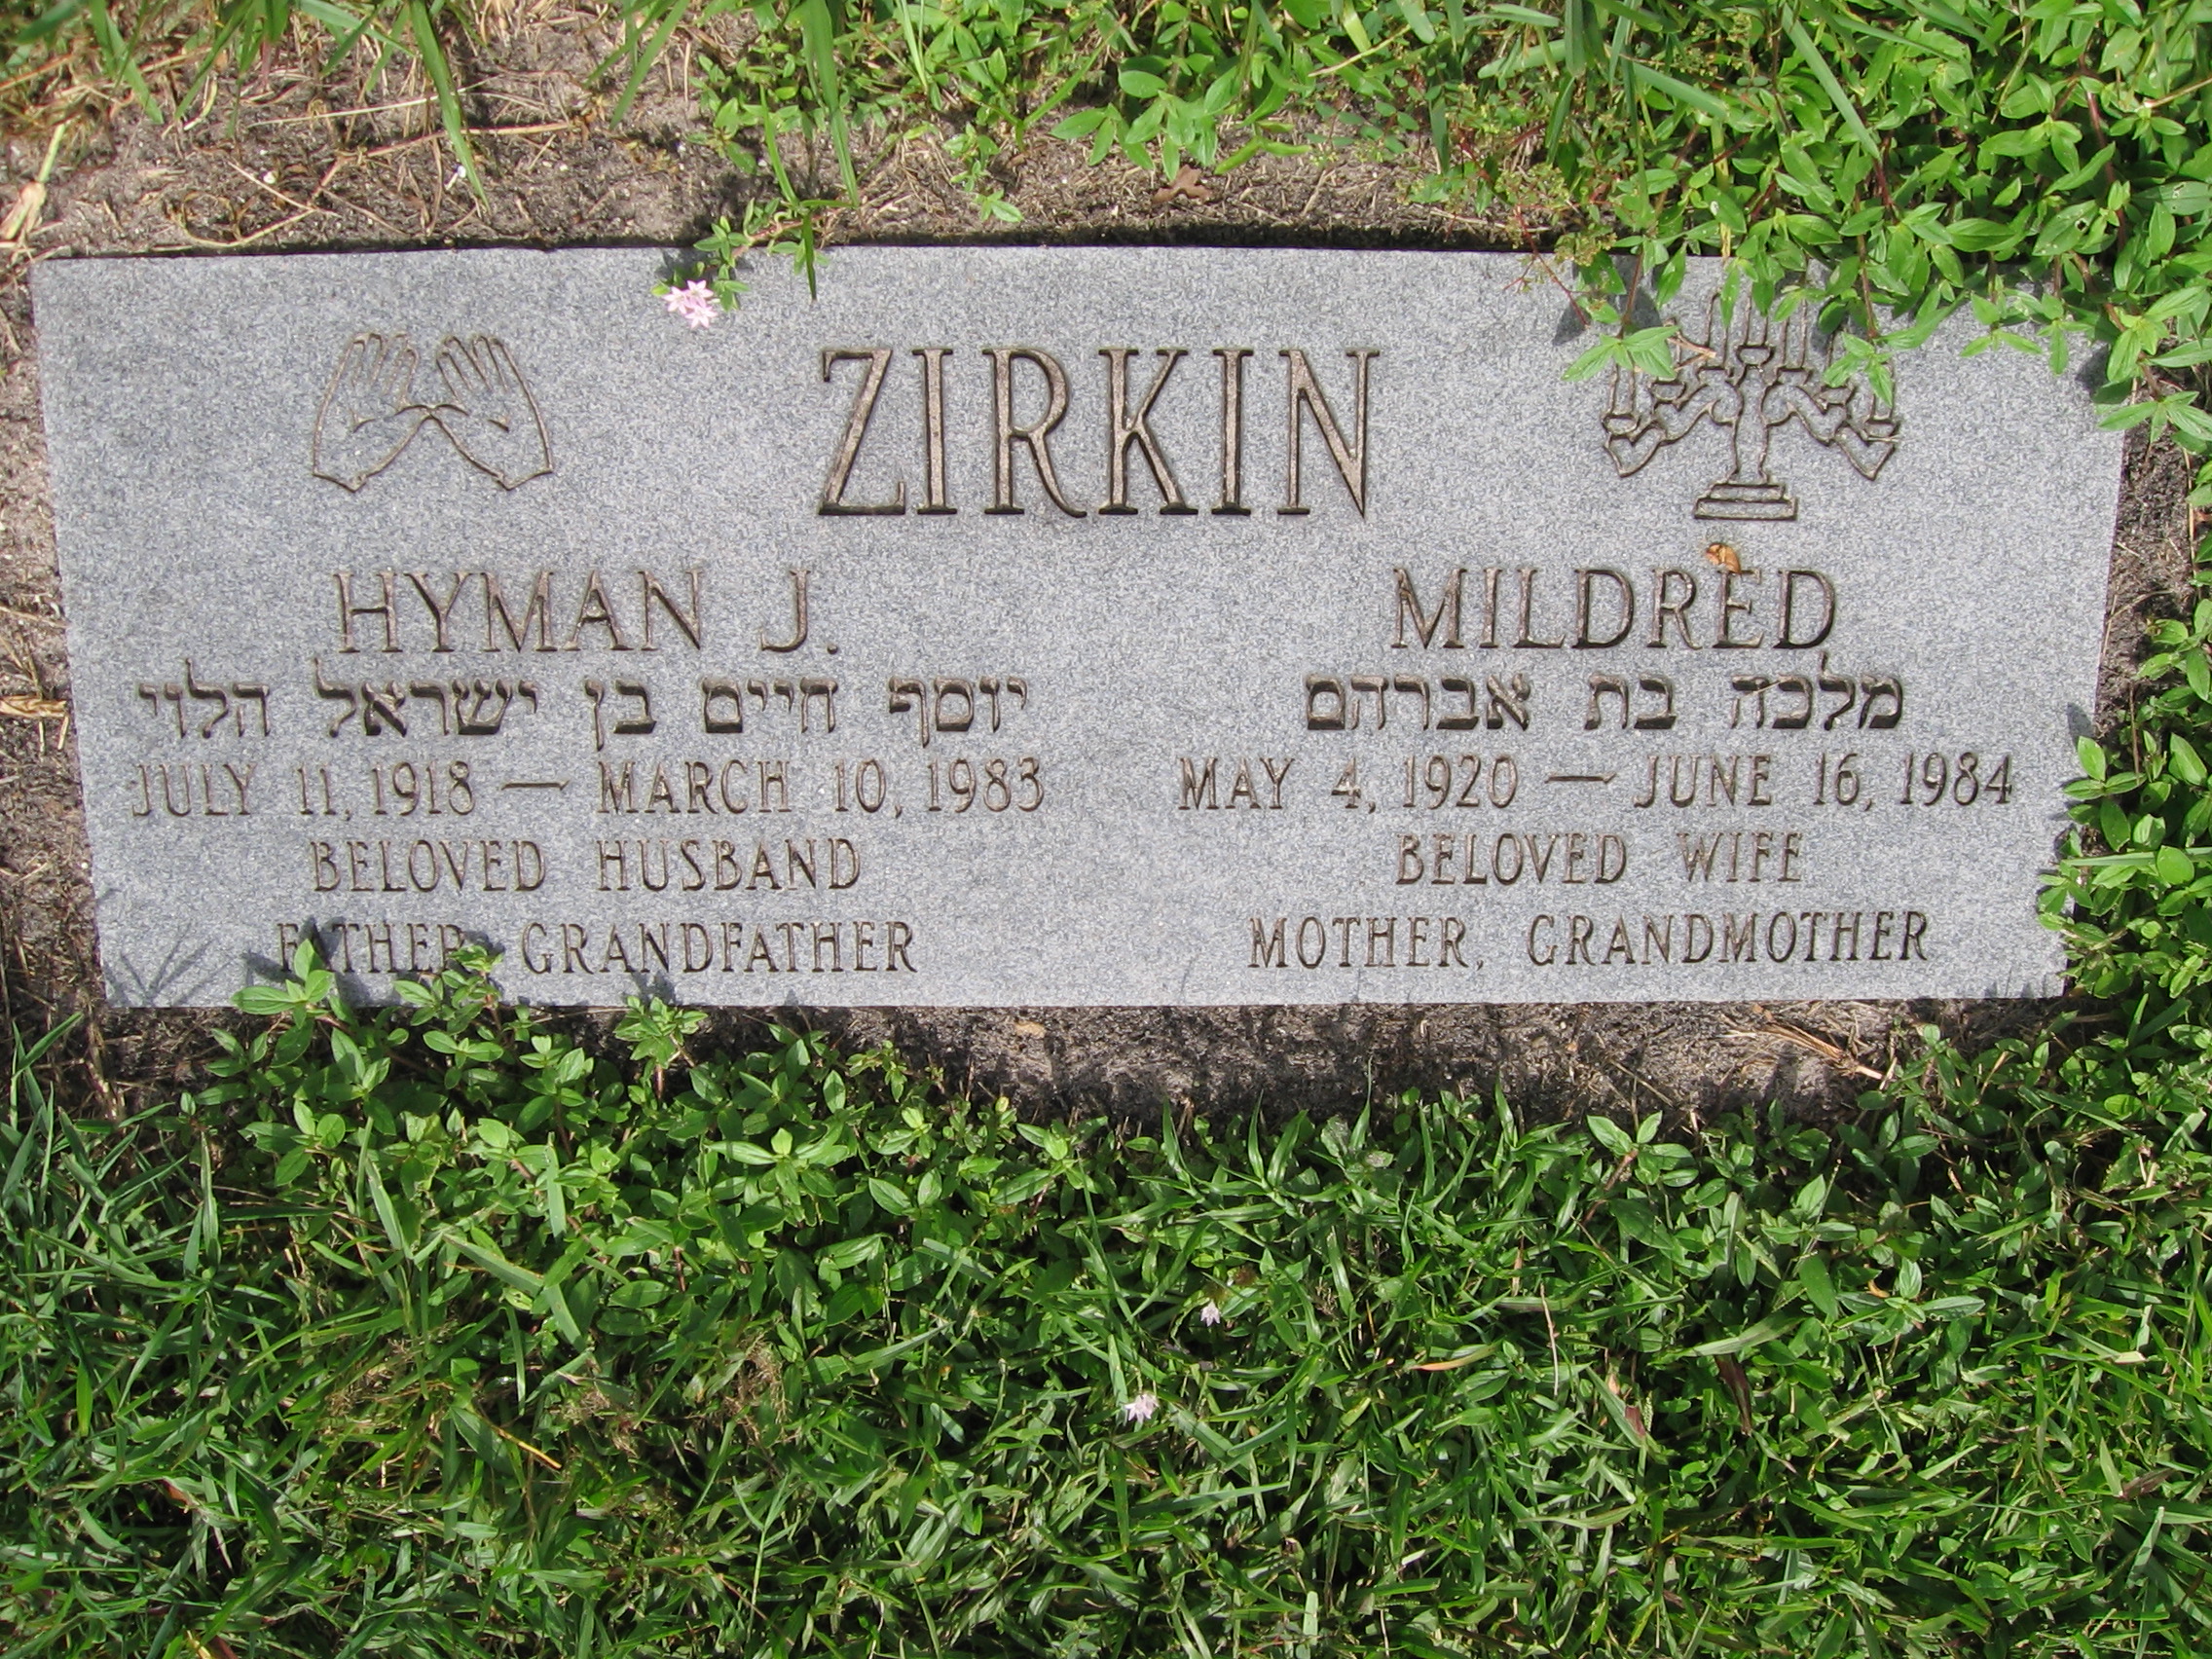 Hyman J Zirkin